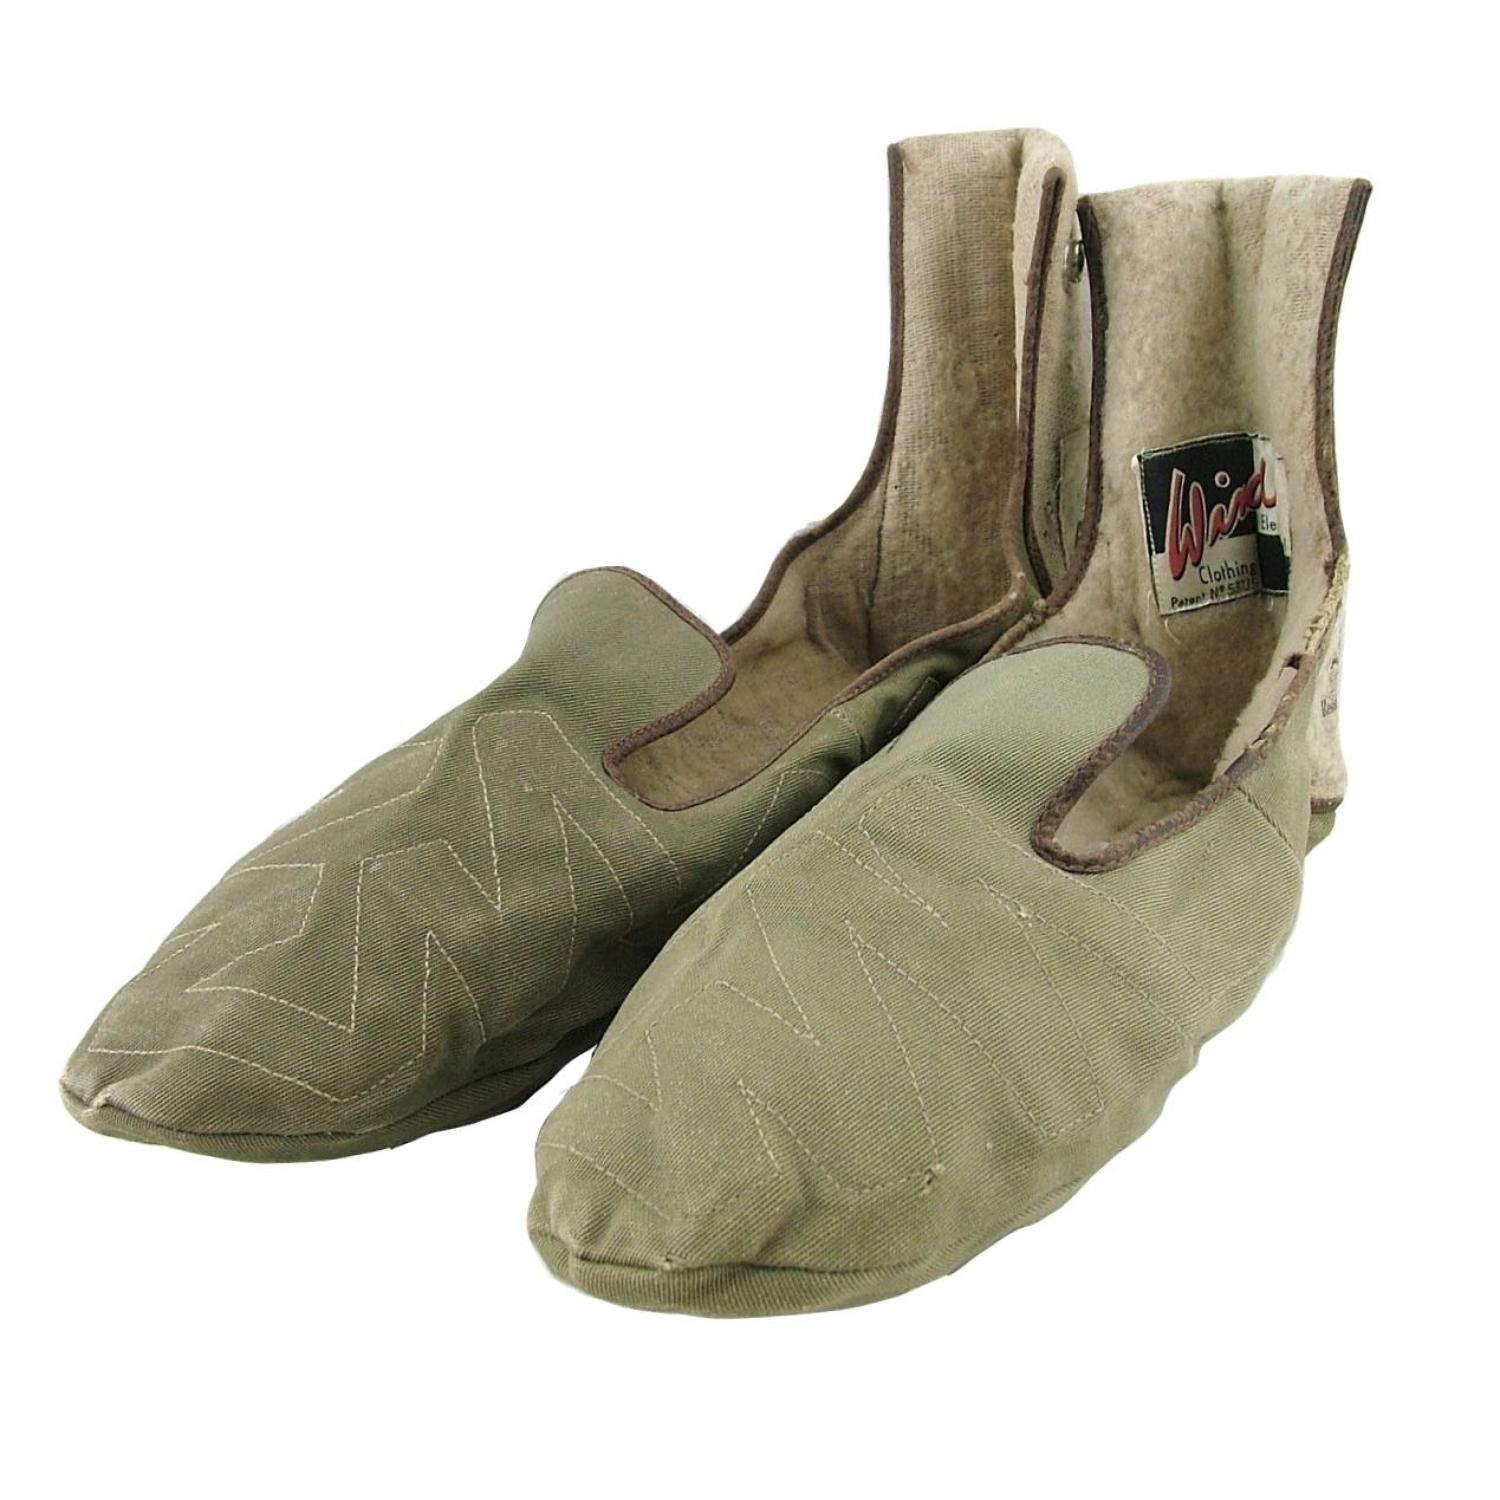 RAF electrically heated socks